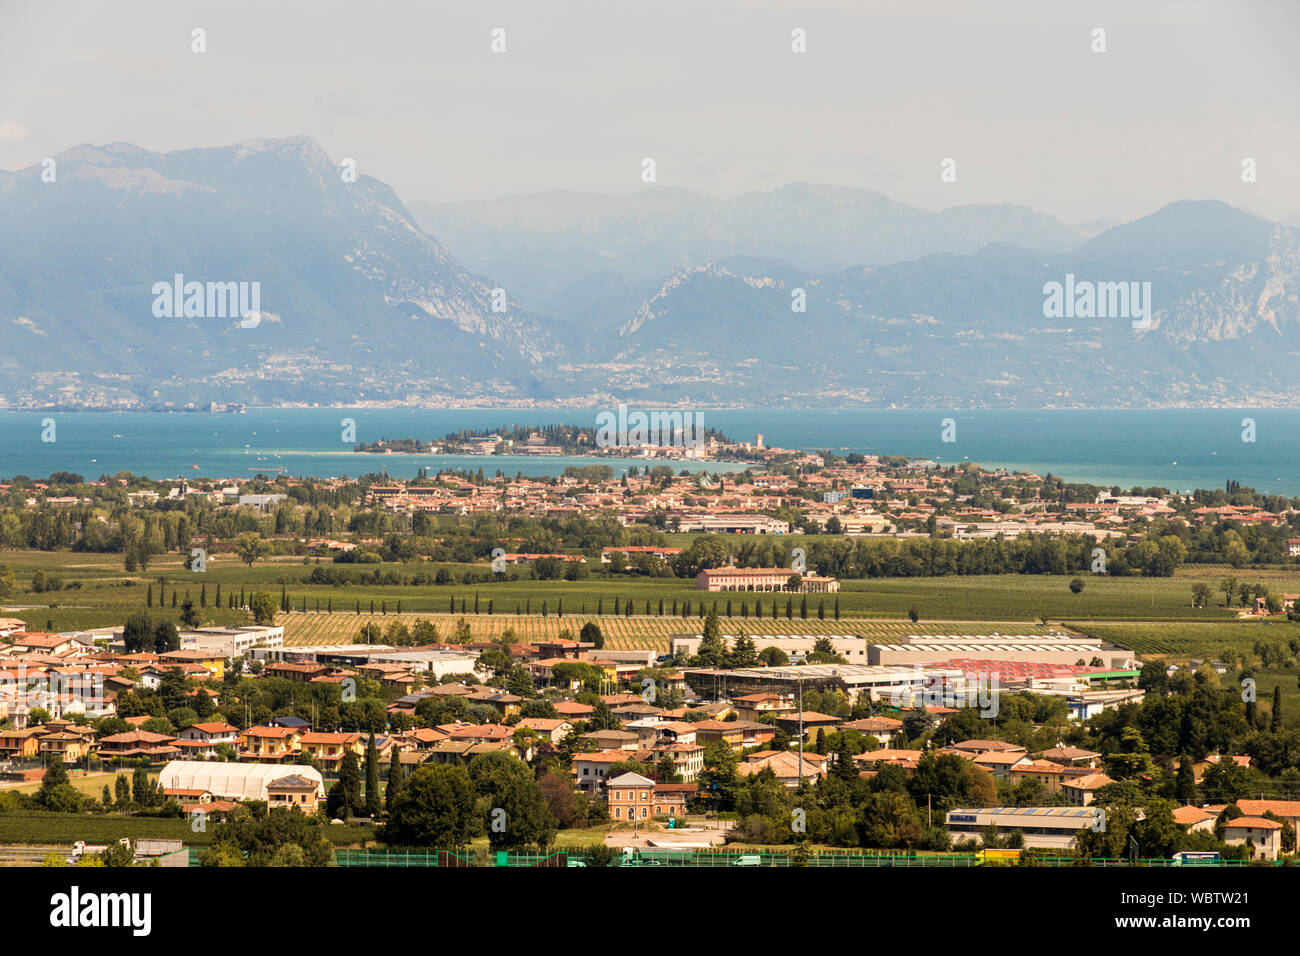 Desenzano del Garda, Italy. Views of Sirmione and Lake Garda from the top of the monumental memorial tower in San Martino della Battaglia Stock Photo